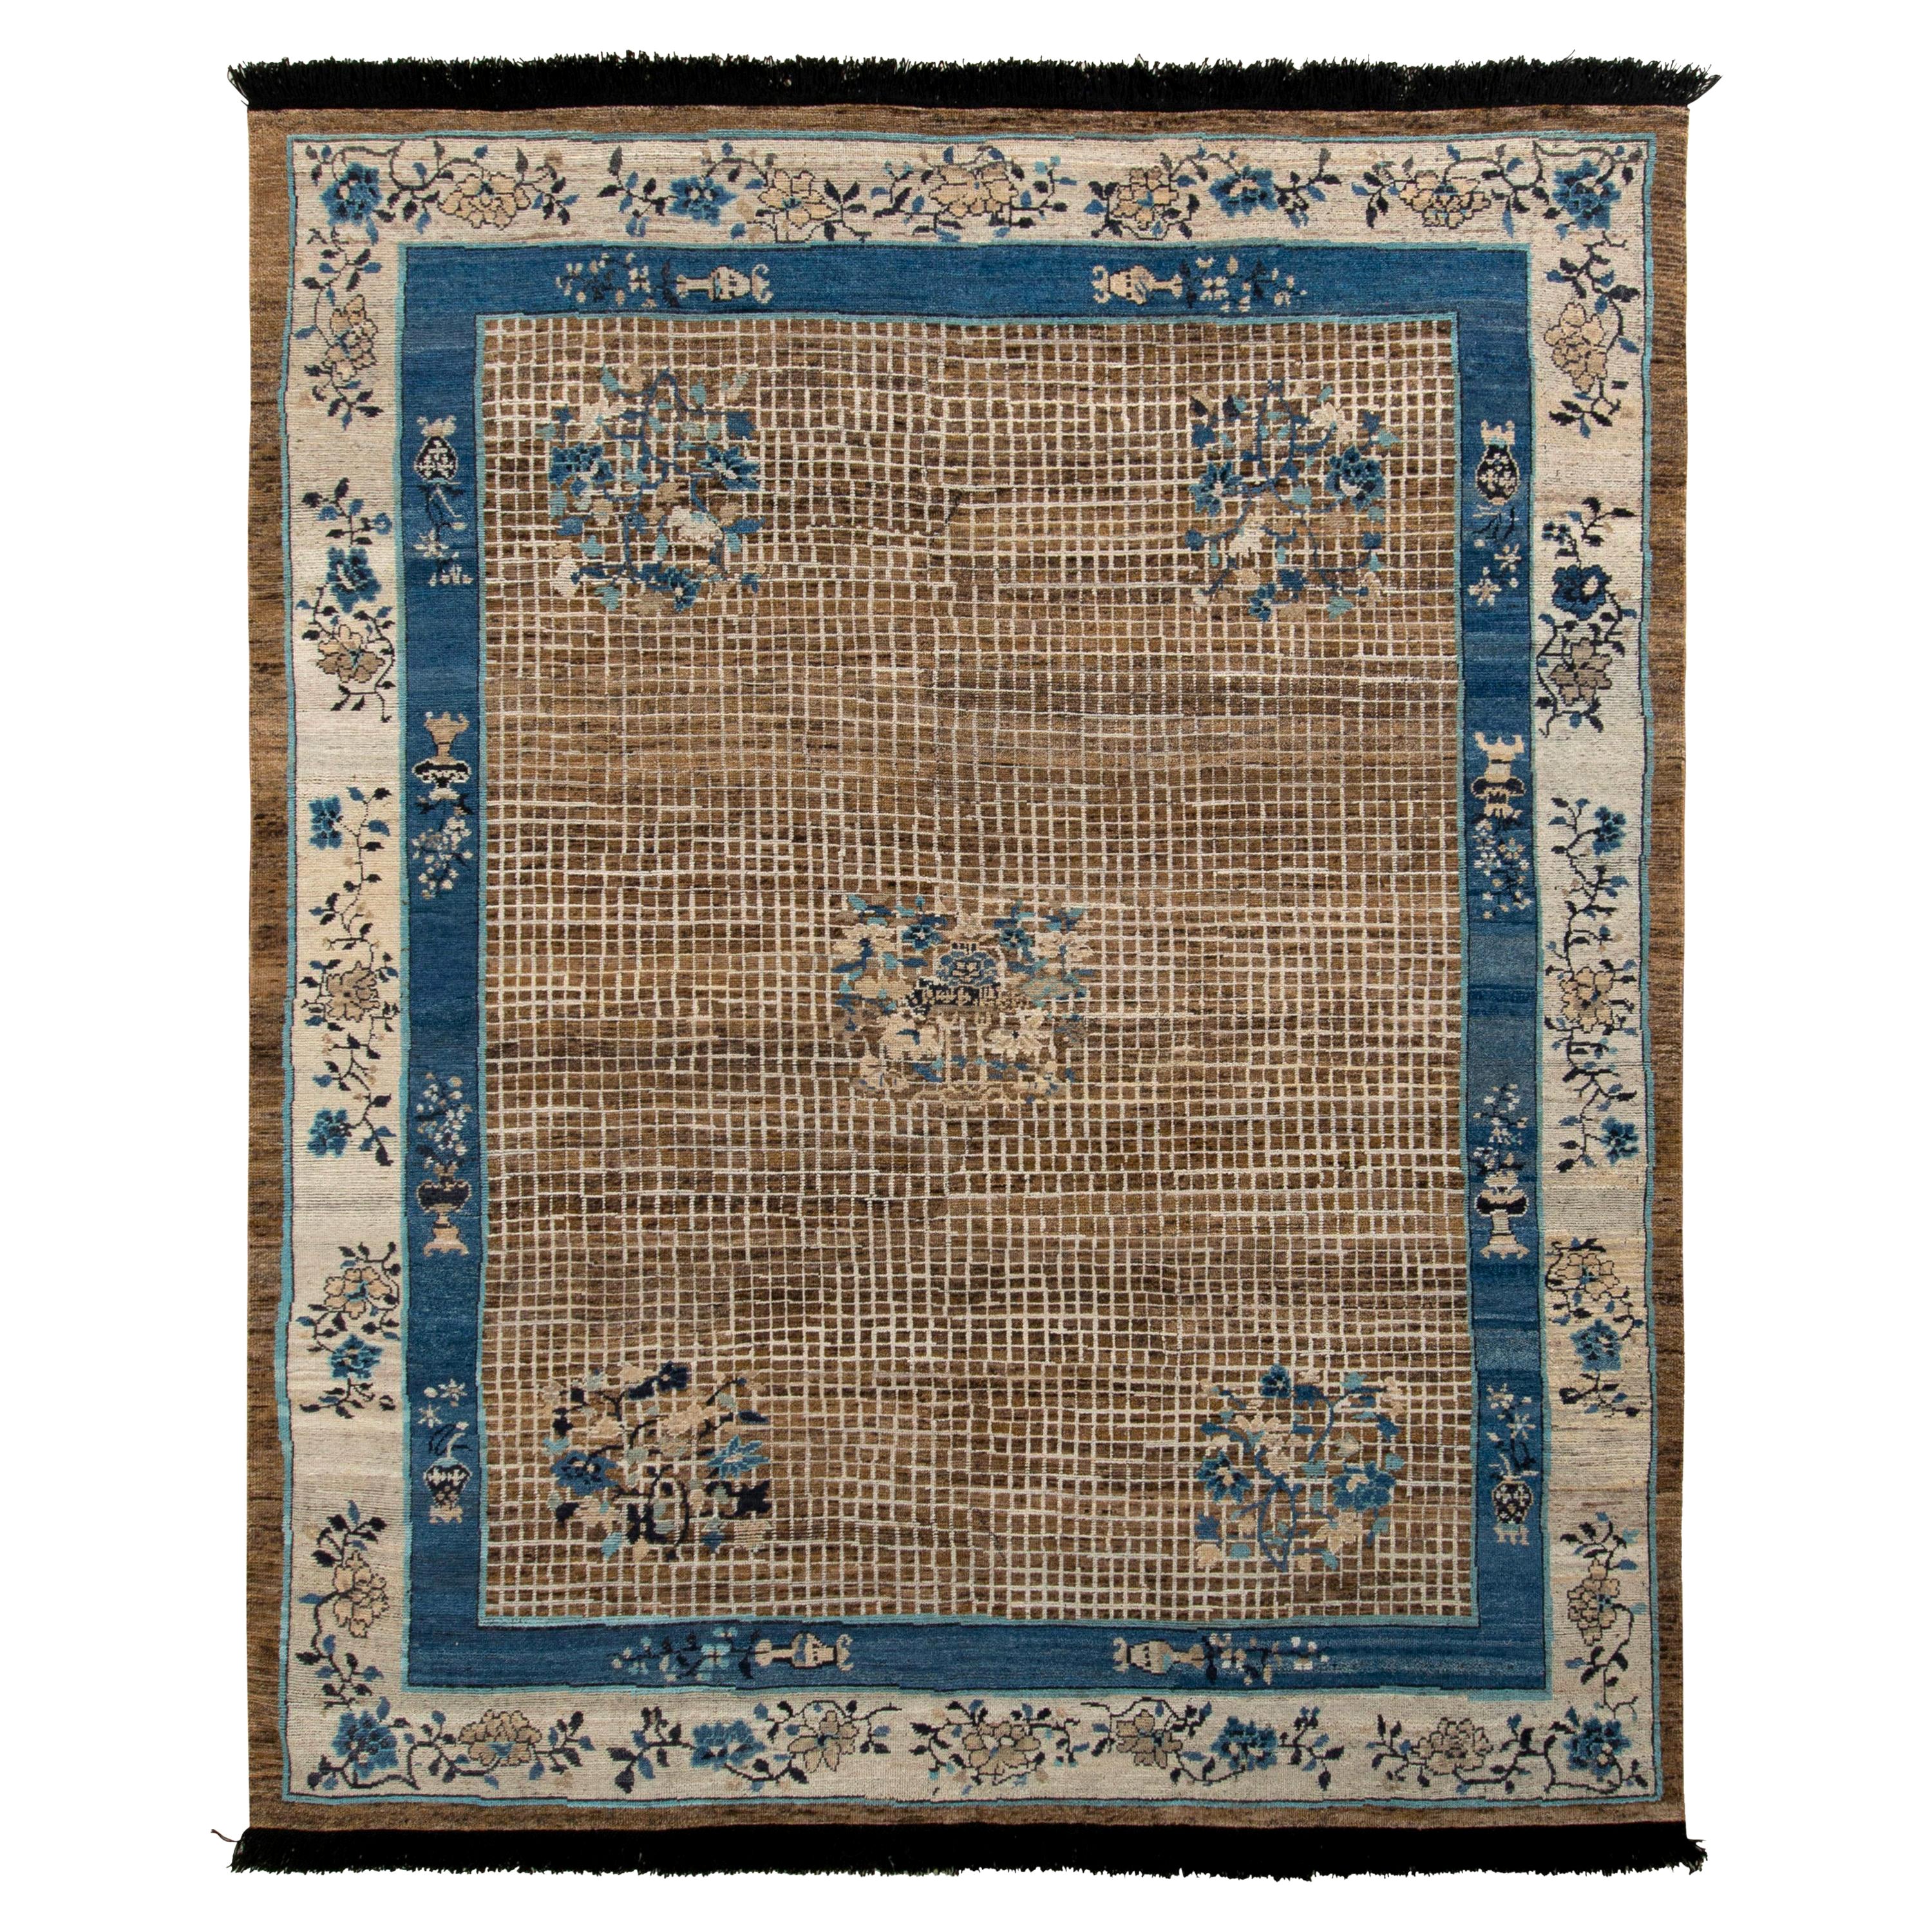 Chinesischer Art Deco Teppich von Rug & Kilim in Beige-Braun und blauem Medaillon-Stil